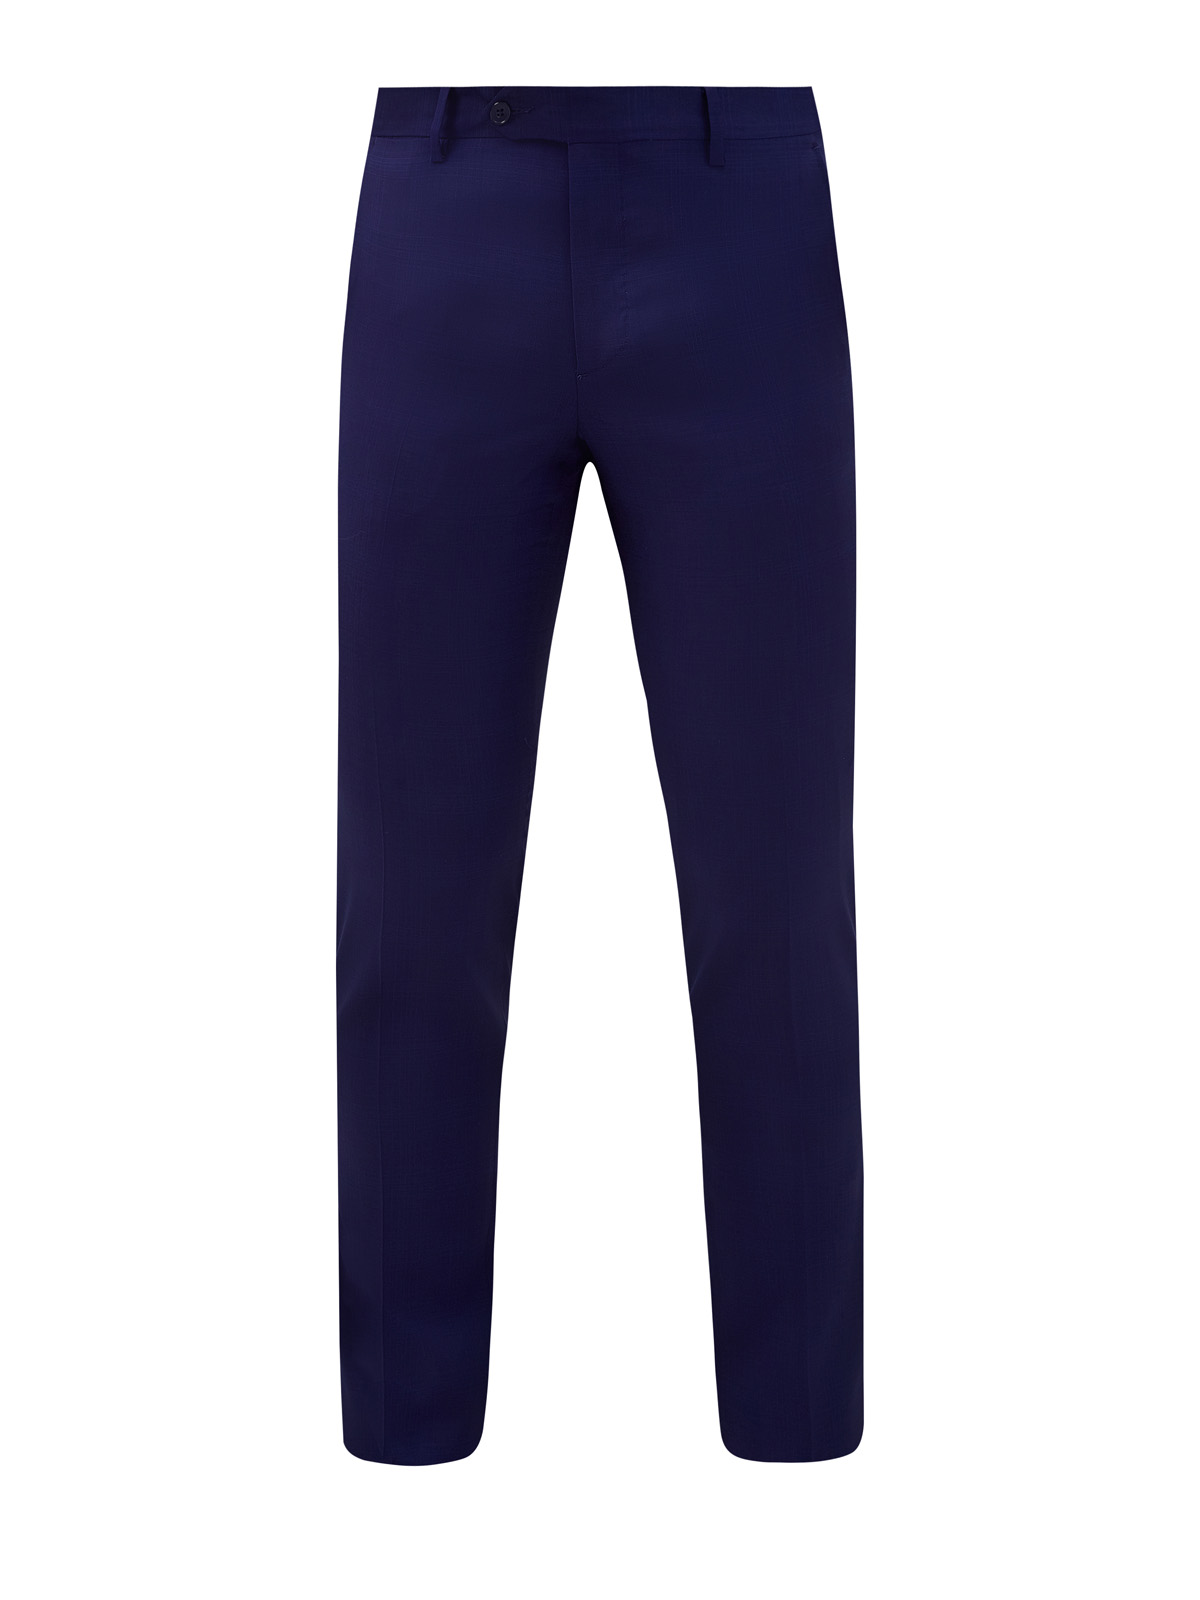 Костюмные брюки из эластичной шерсти с мелованным узором L.B.M. 1911, цвет синий, размер 52;54;56